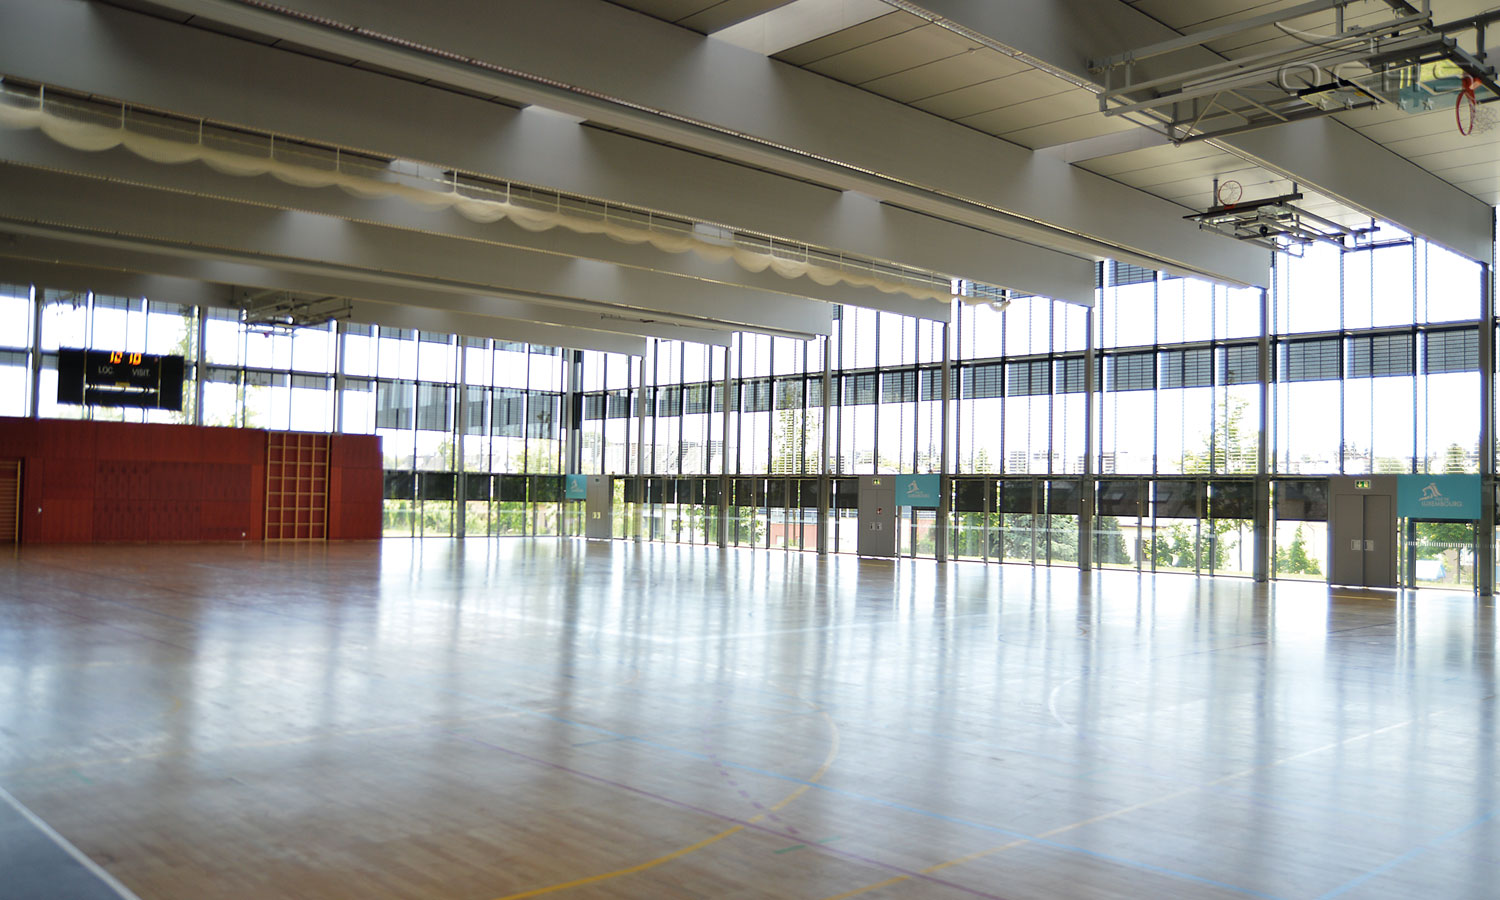 Sporthalle von Innen - Centre des Sports Belair